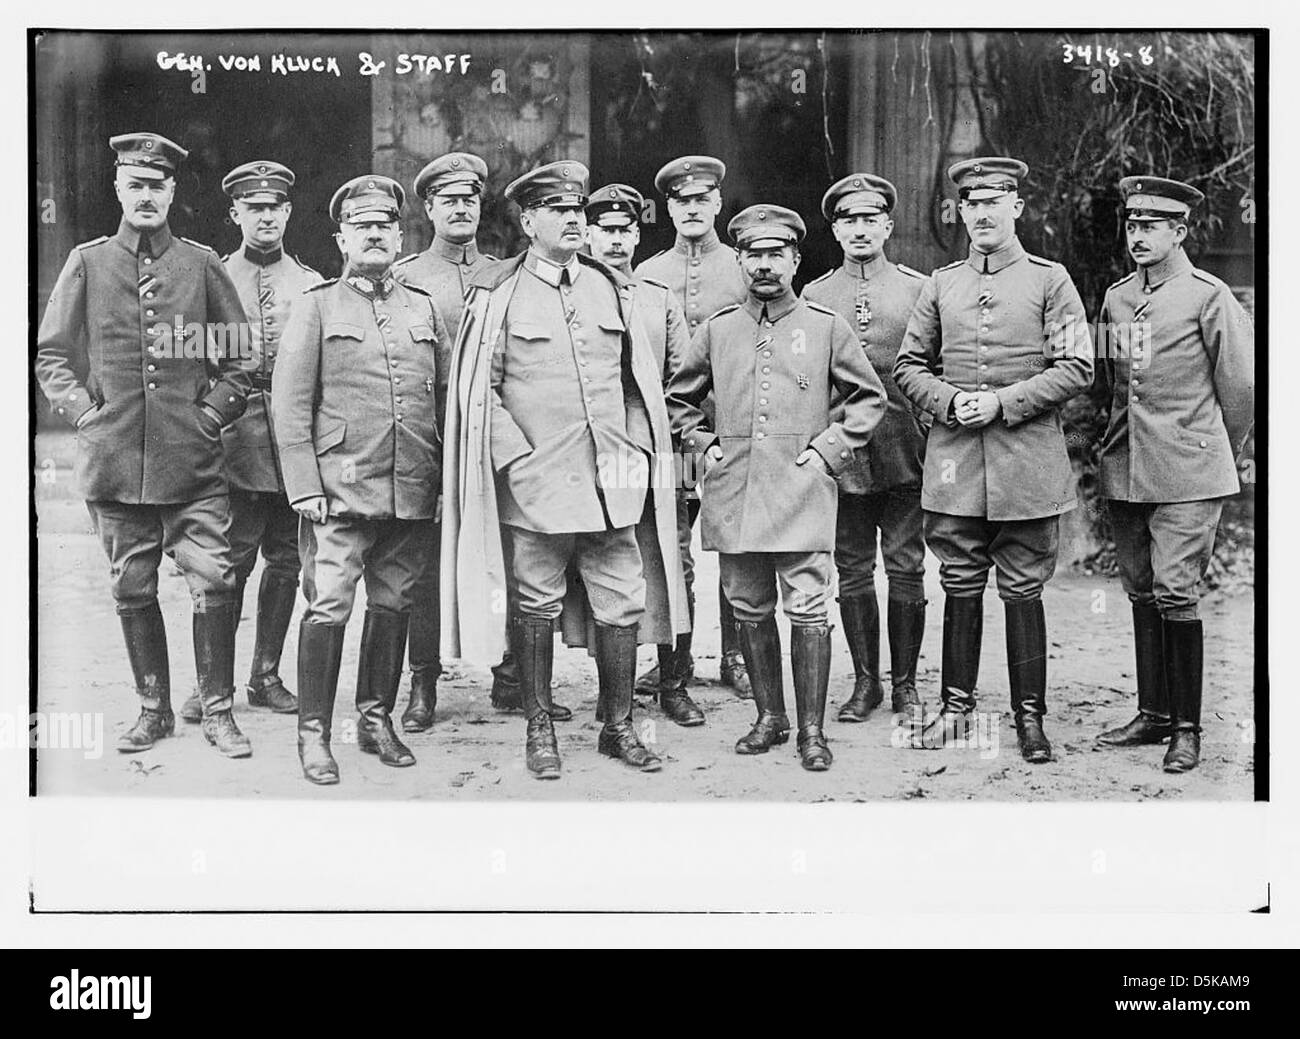 Gen. von Kluck and staff (LOC) Stock Photo